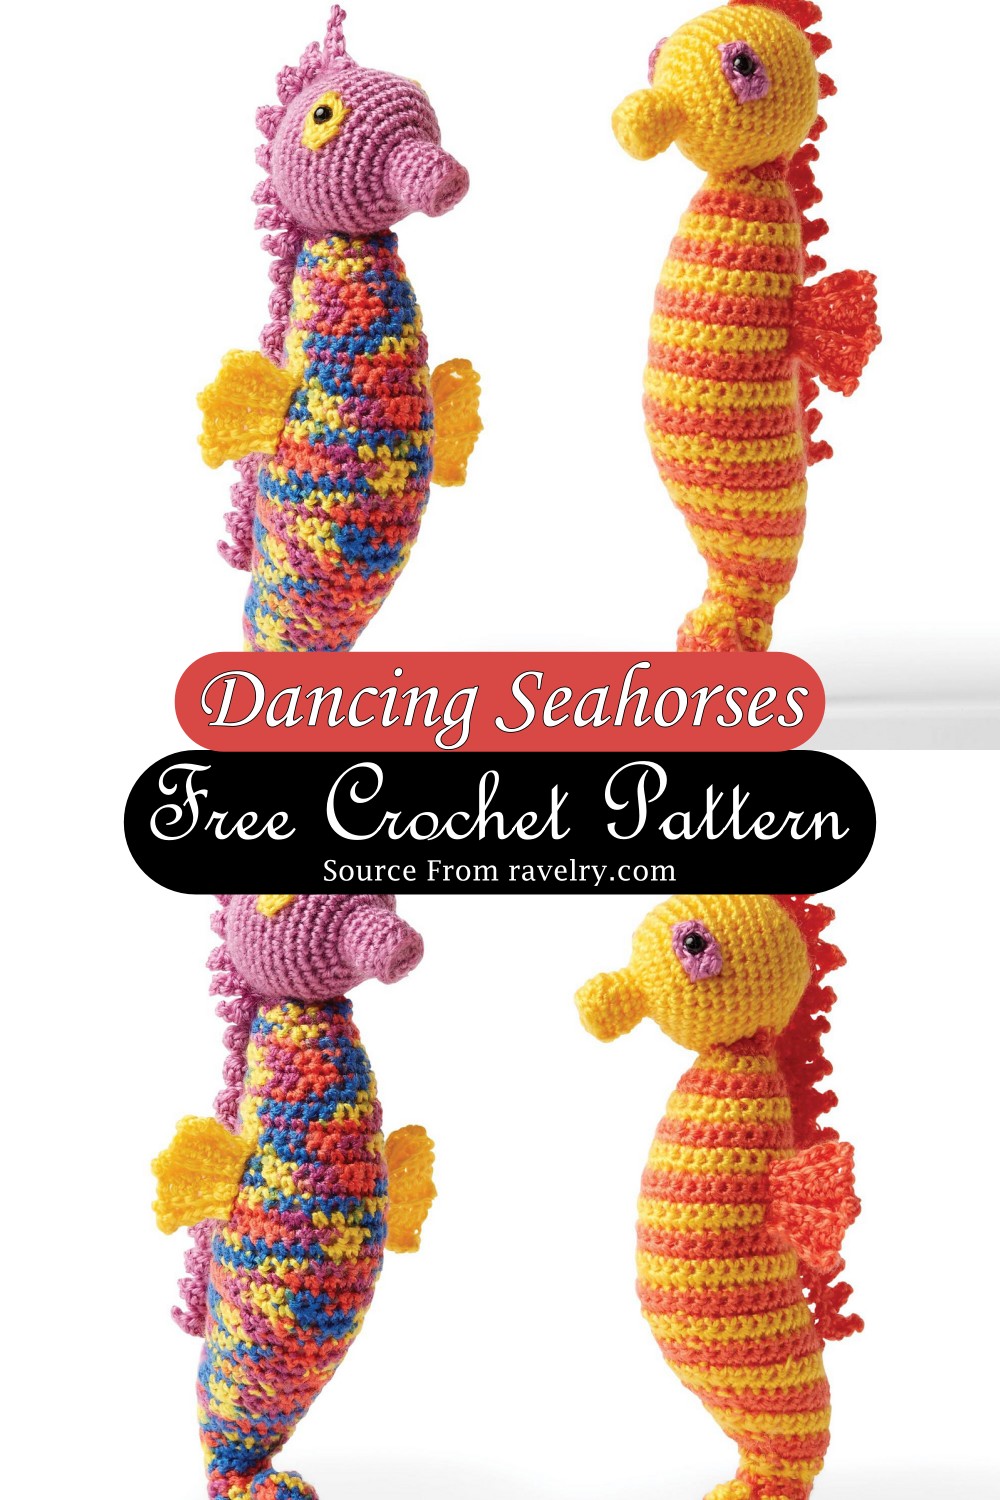 Dancing Seahorses